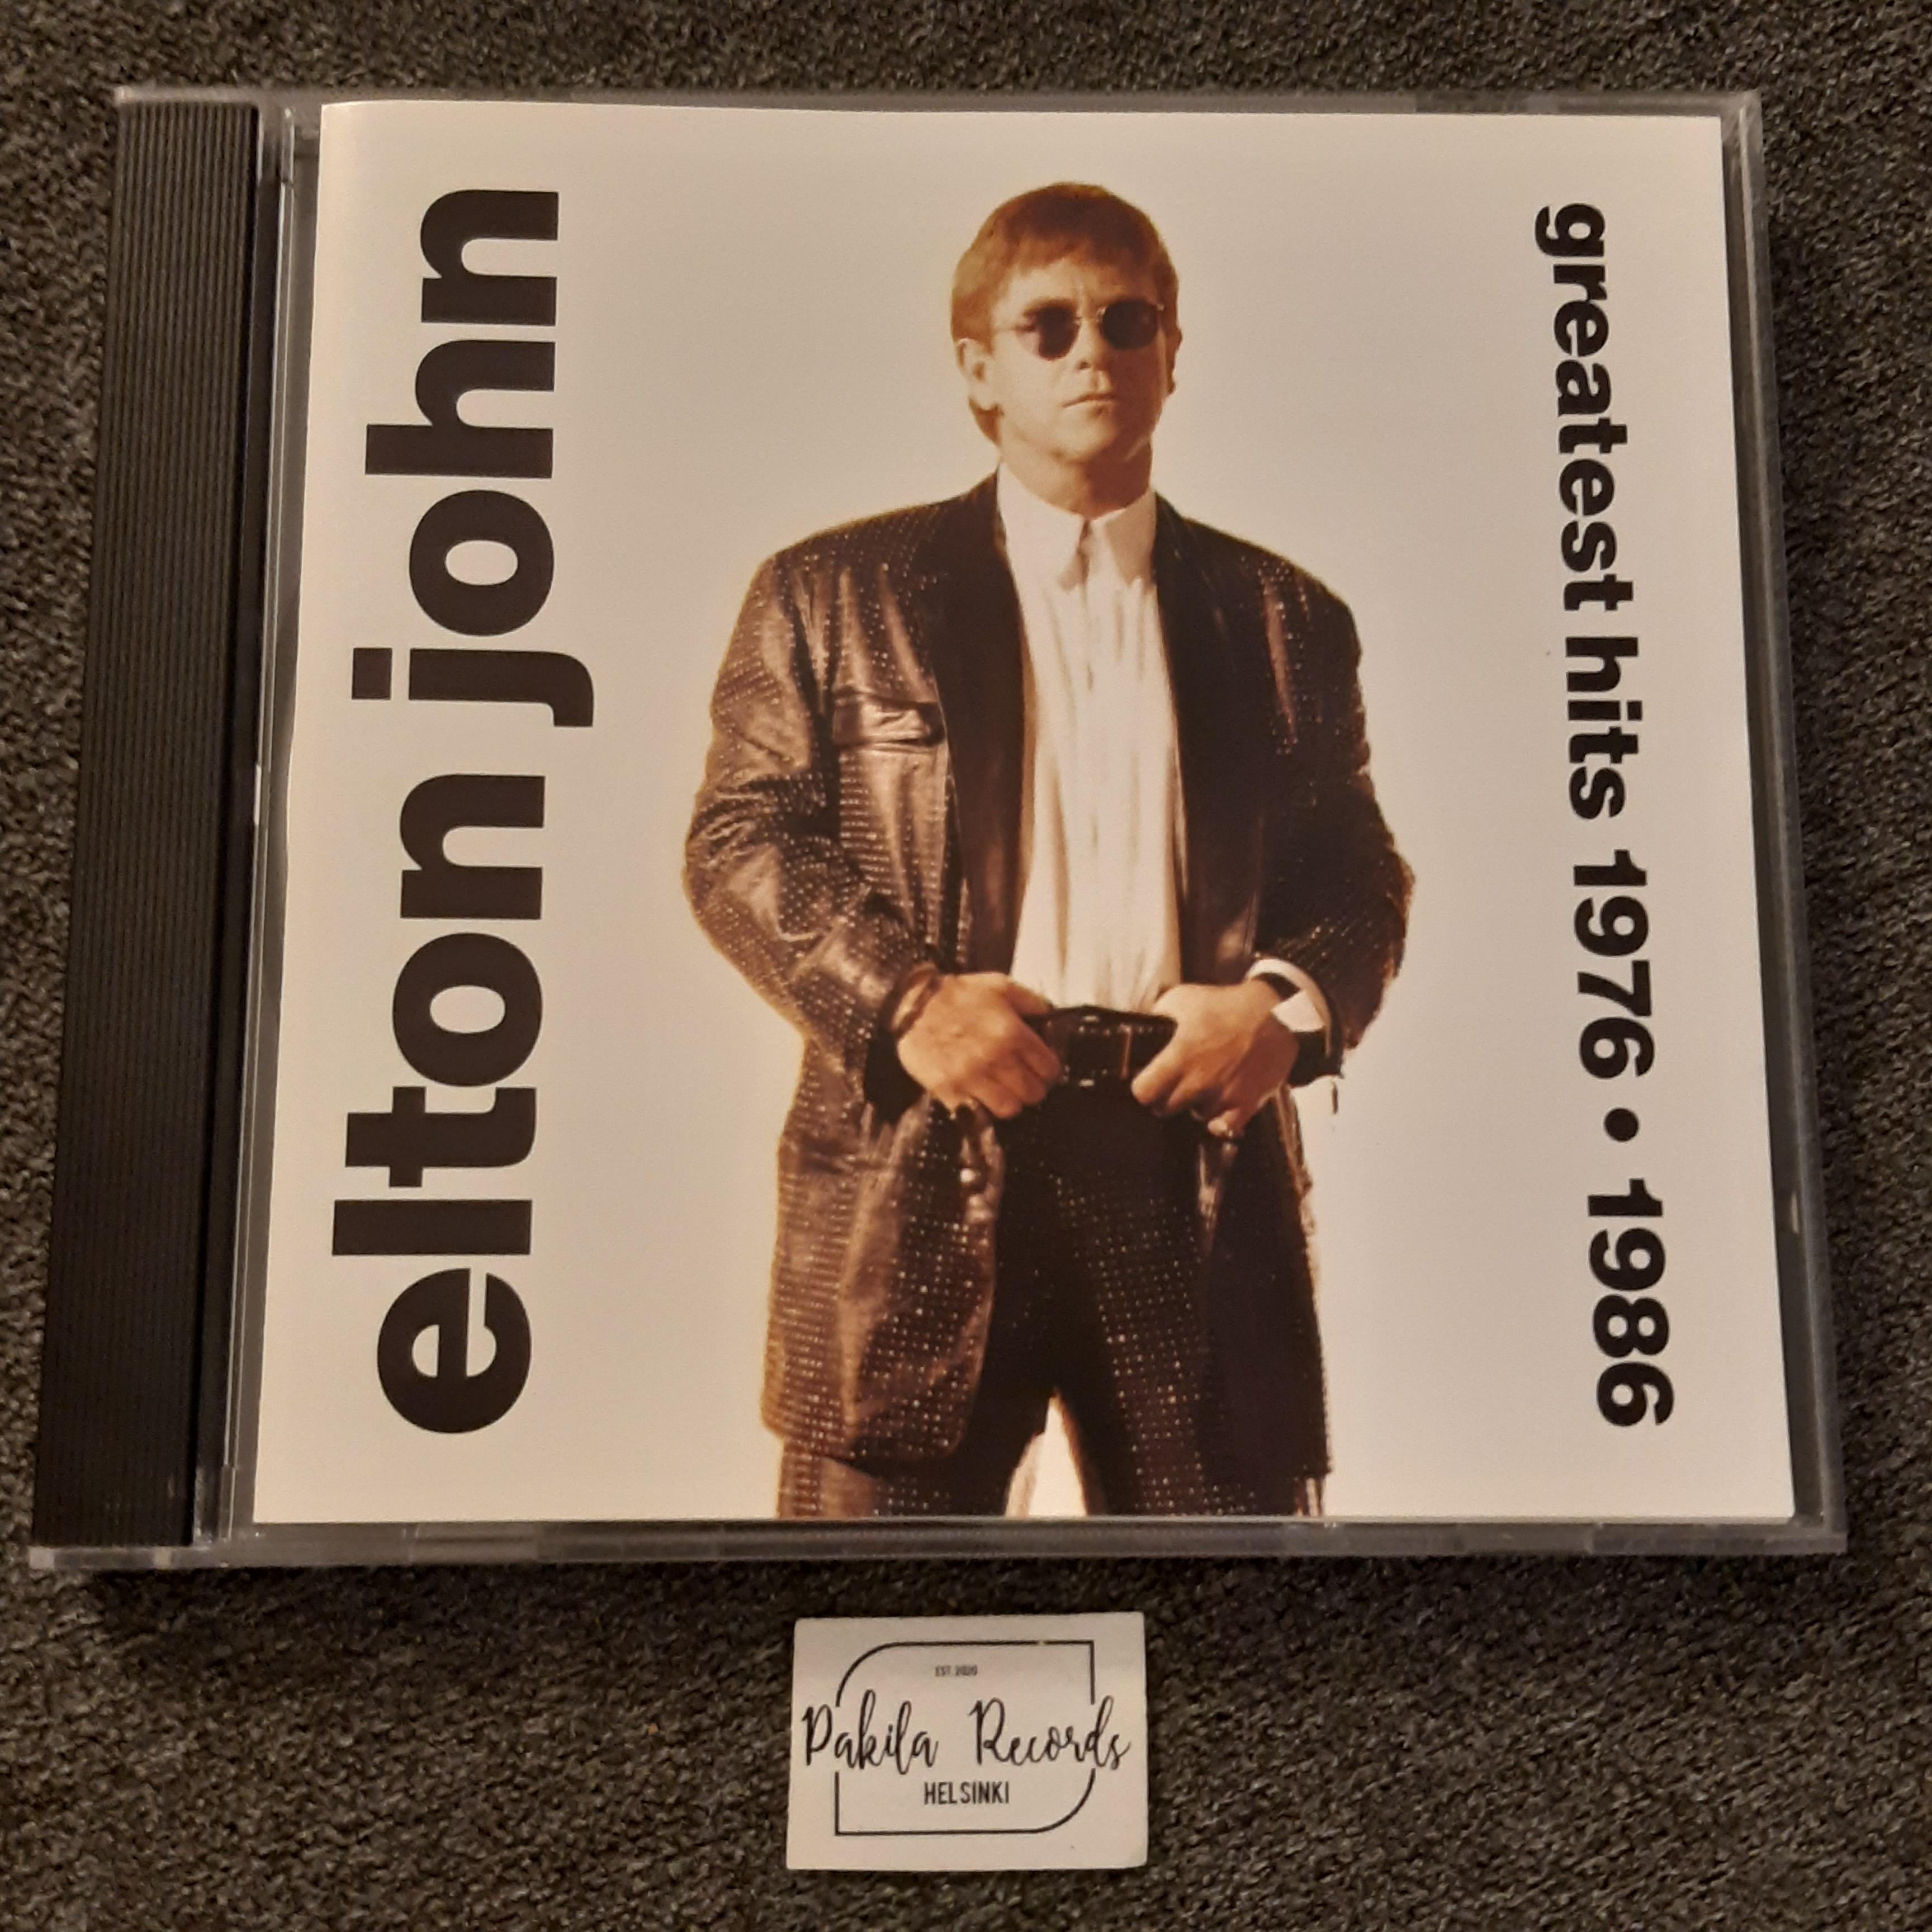 Elton John - Greatest Hits 1976-1986 - CD (käytetty)